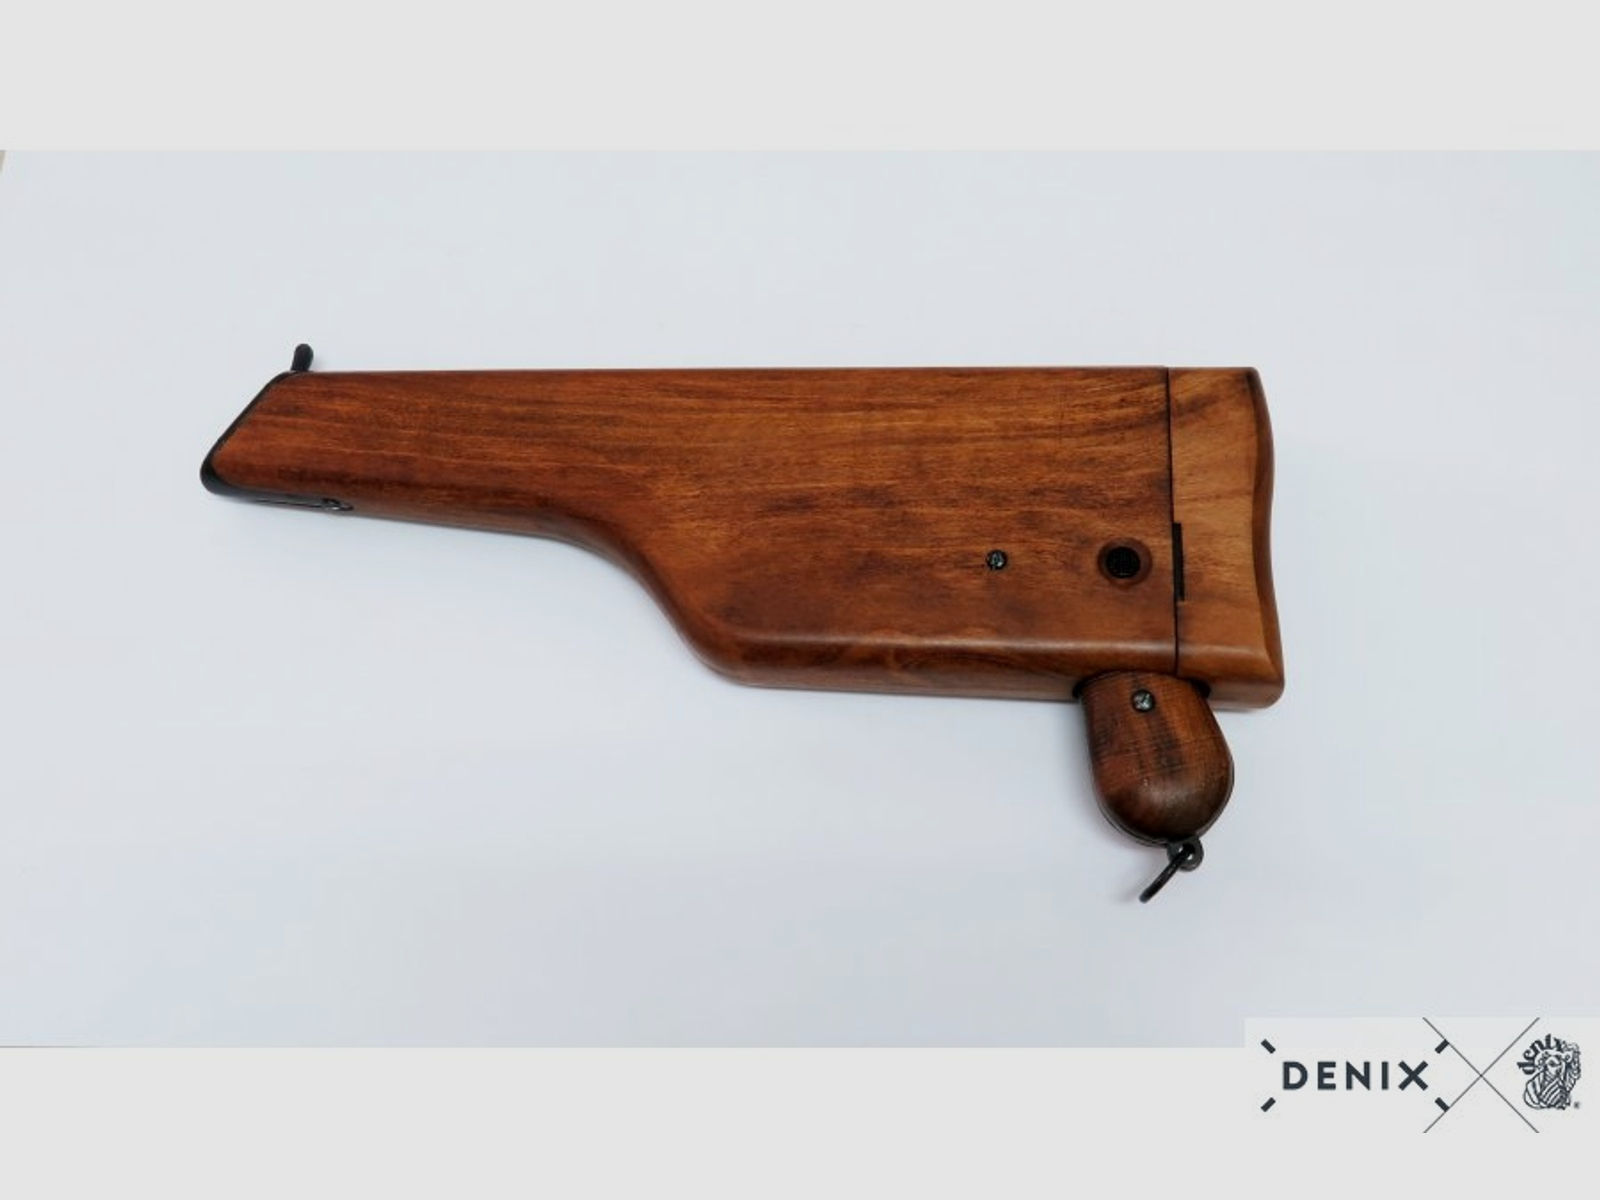 Mauserpistole C96 mit Gewehrschaft aus Holz, Deutschland 1896 | 88606